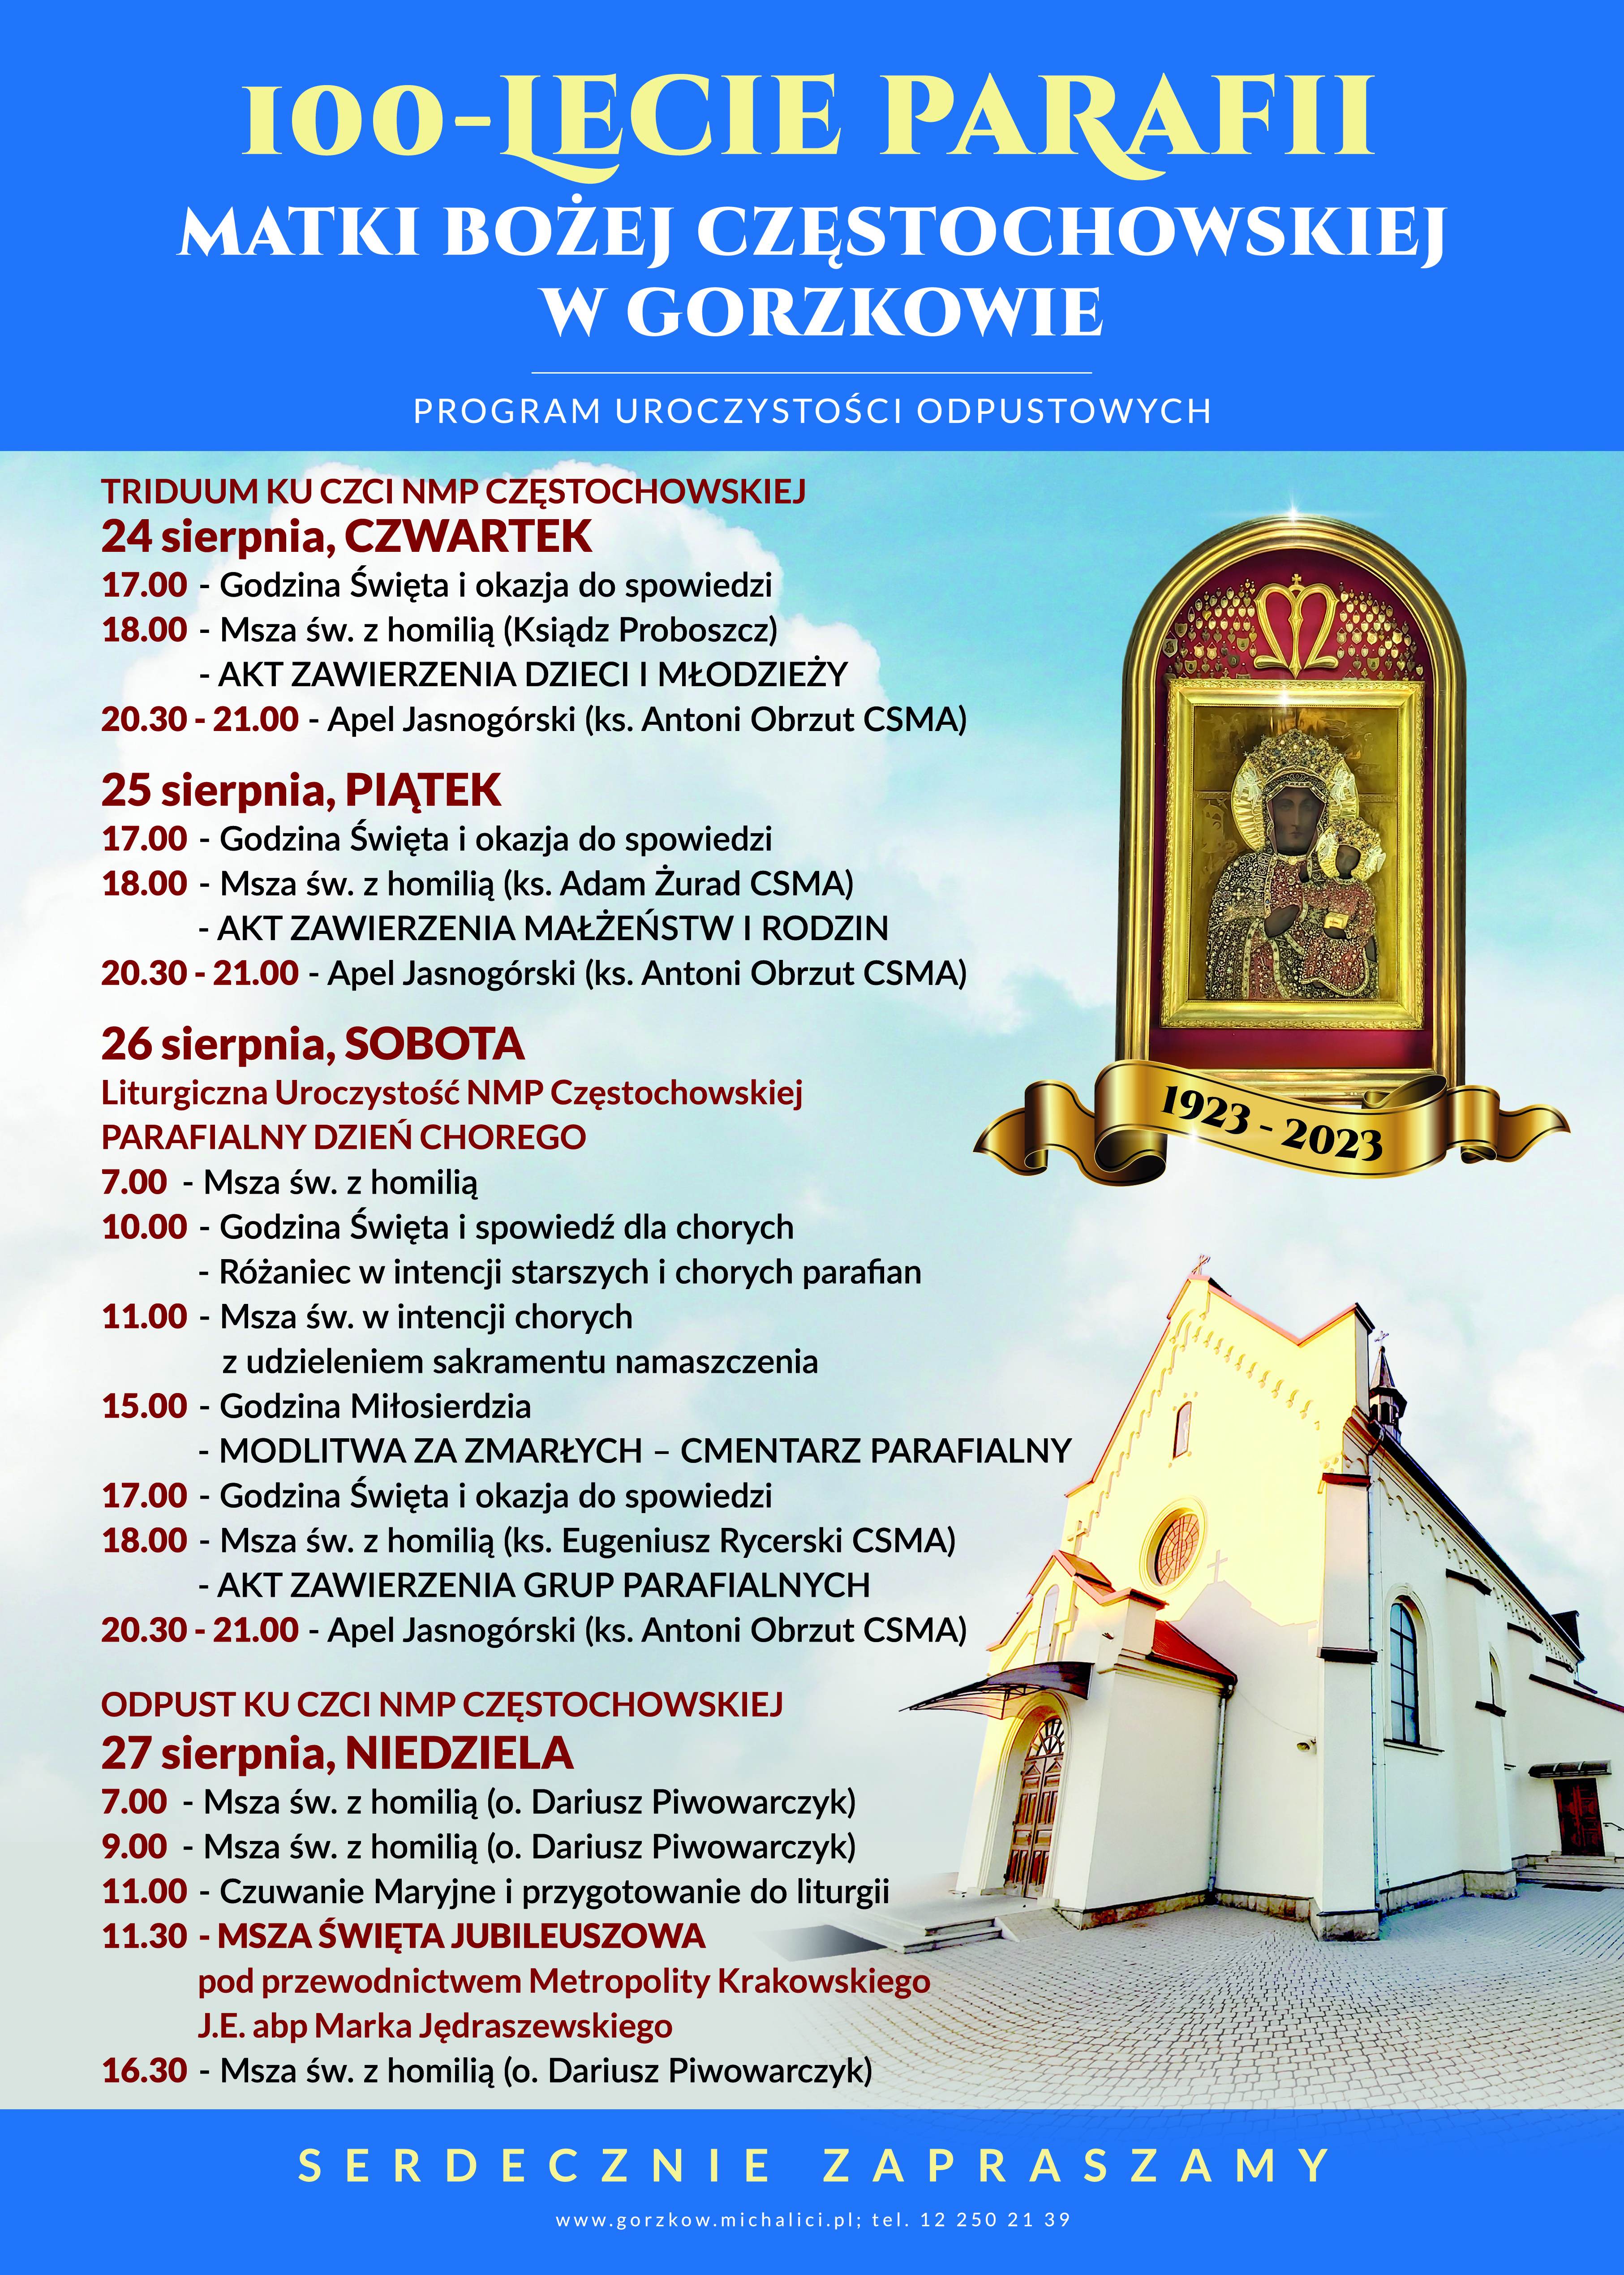 Jubileusz 100-lecia parafii Matki Bożej Częstochowskiej